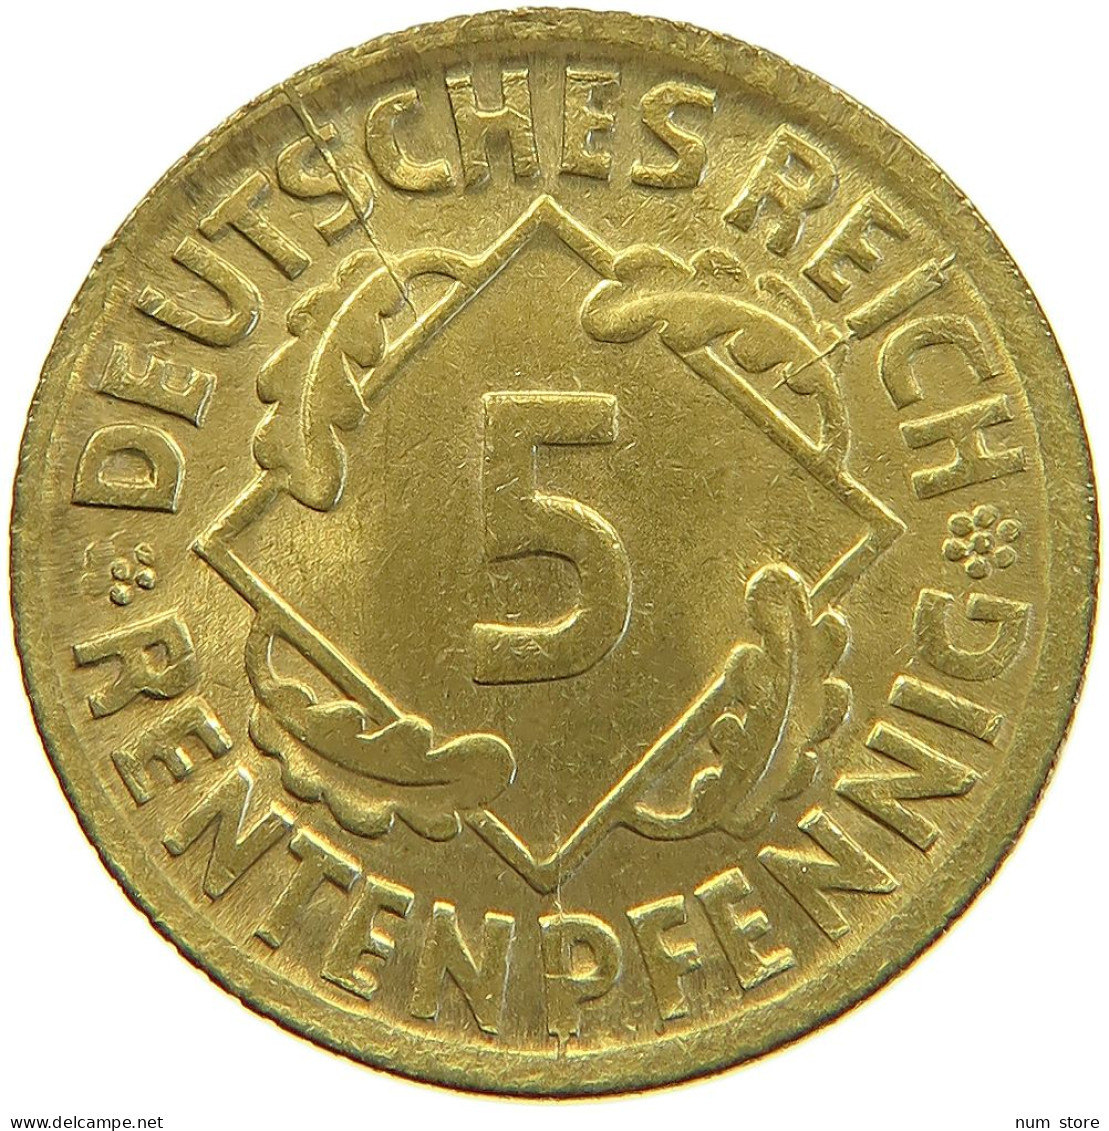 WEIMARER REPUBLIK 5 PFENNIG 1924 D DIE ERROR #a053 0369 - 5 Rentenpfennig & 5 Reichspfennig